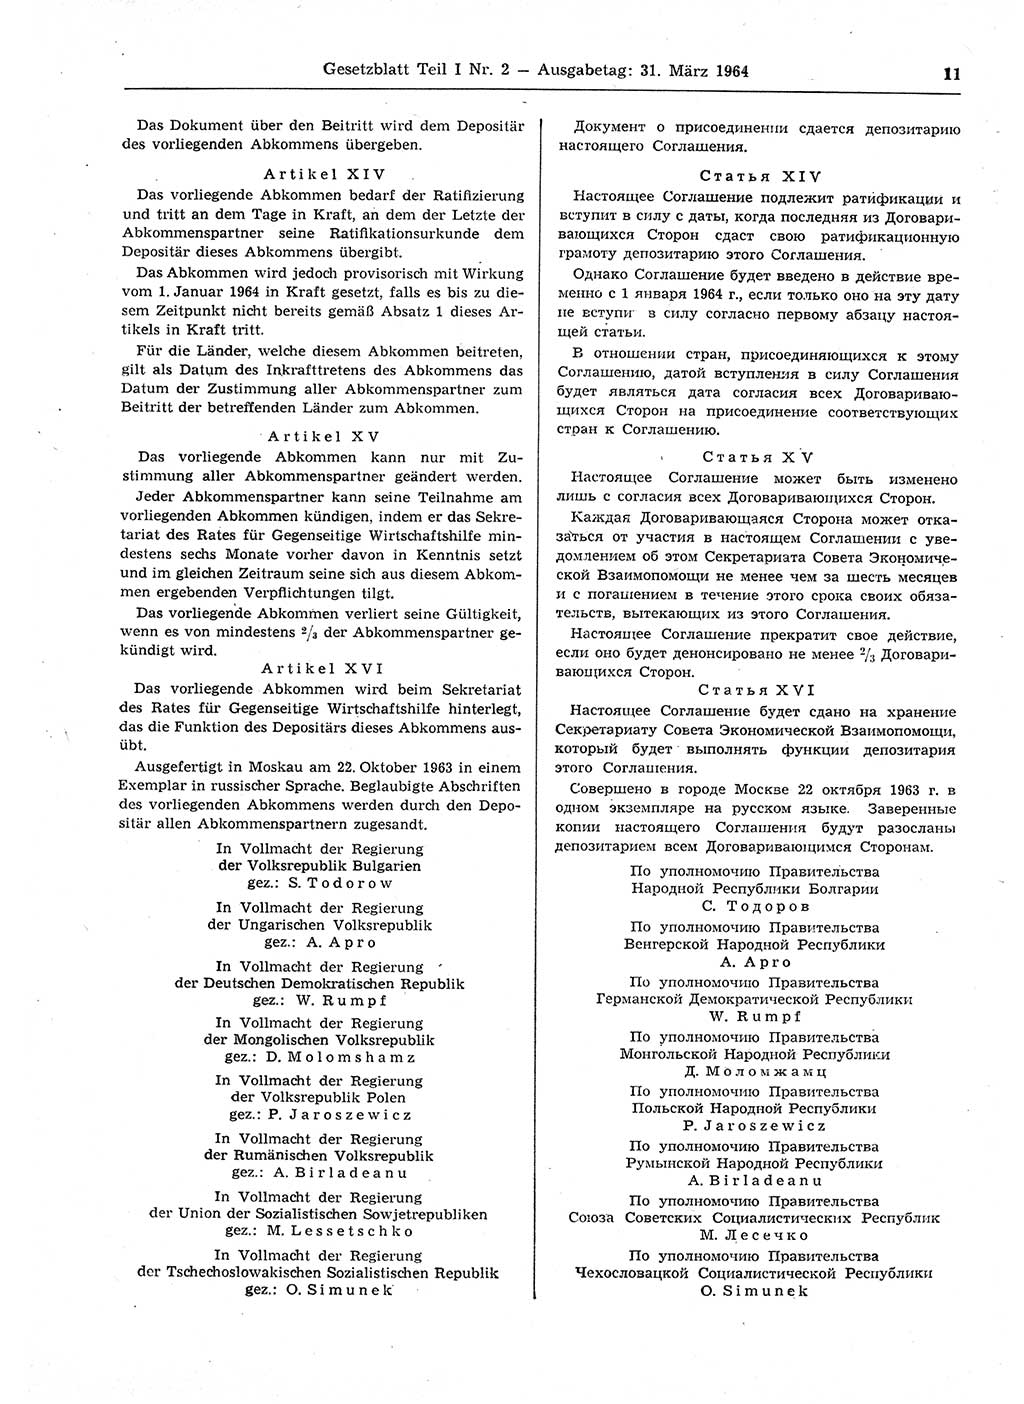 Gesetzblatt (GBl.) der Deutschen Demokratischen Republik (DDR) Teil Ⅰ 1964, Seite 11 (GBl. DDR Ⅰ 1964, S. 11)